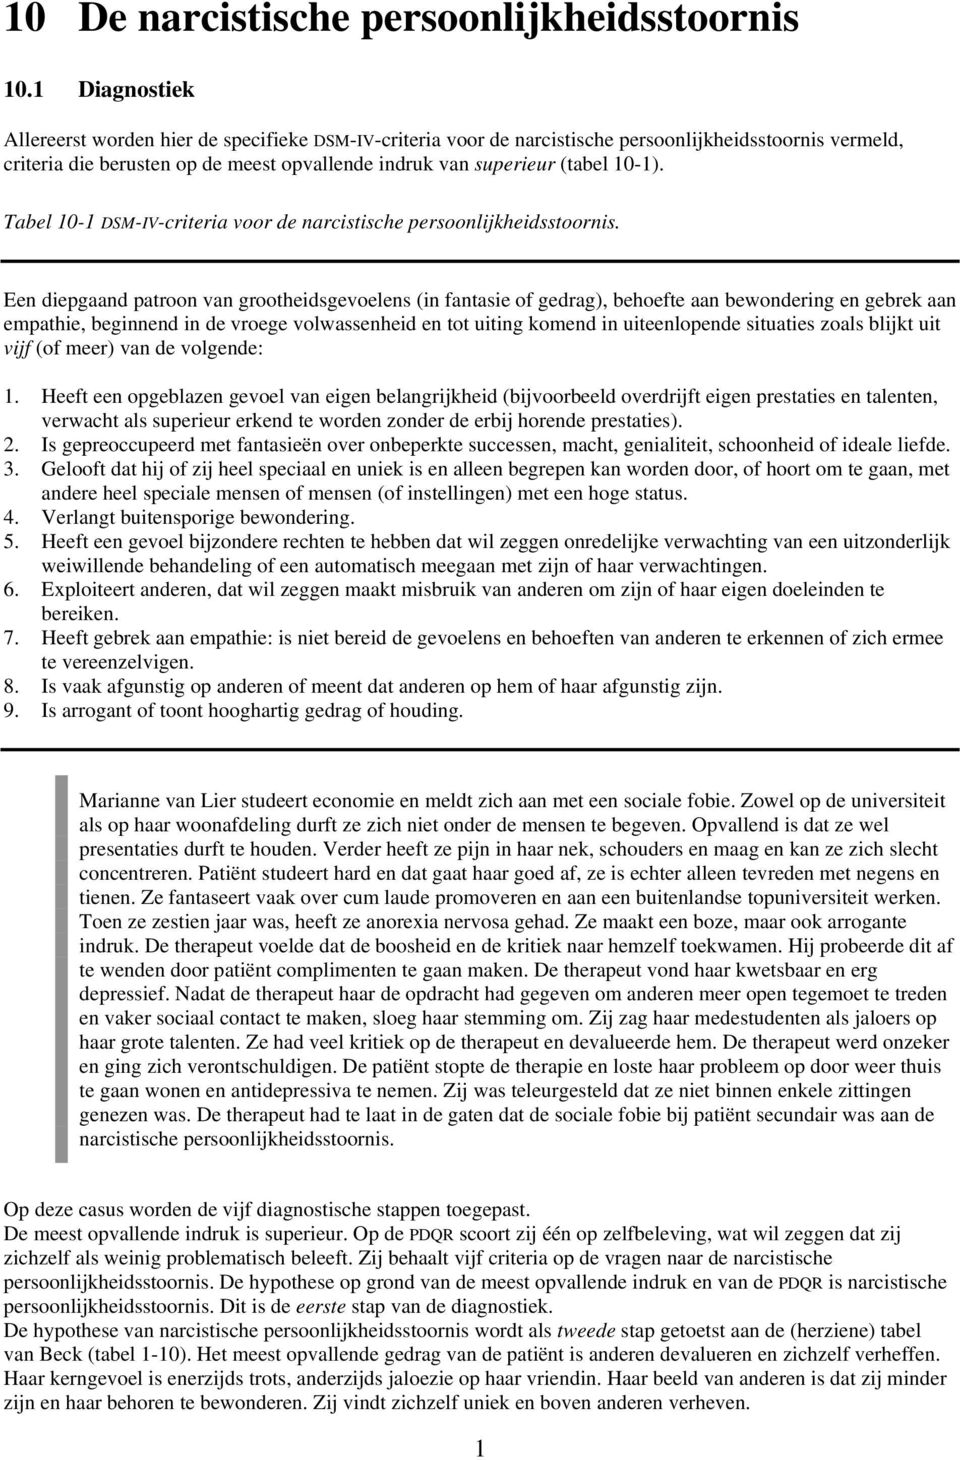 10-1). Tabel 10-1 DSM-IV-criteria voor de narcistische persoonlijkheidsstoornis.